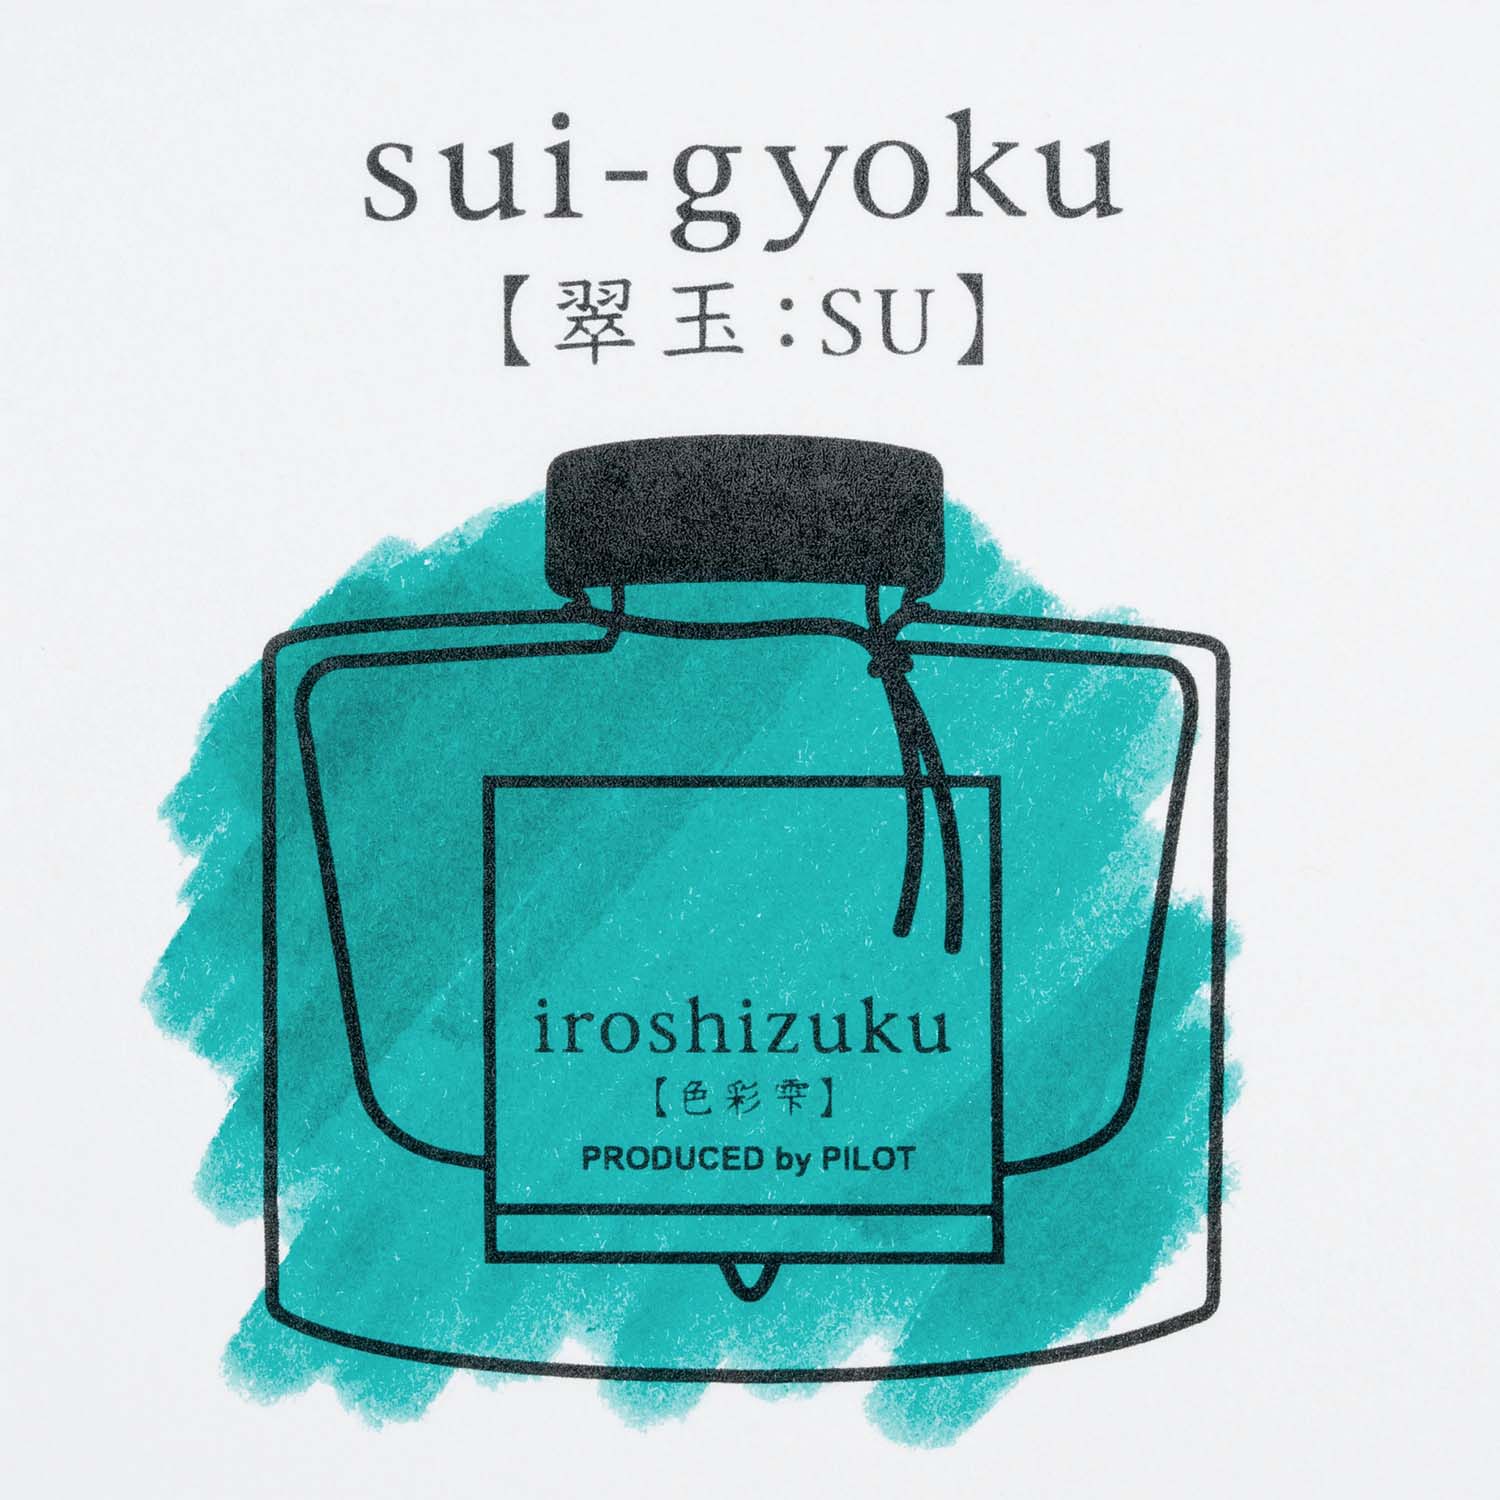 Pilot Iroshizuku Fountain Pen Ink - Sui-Gyoku (Emerald) green sample